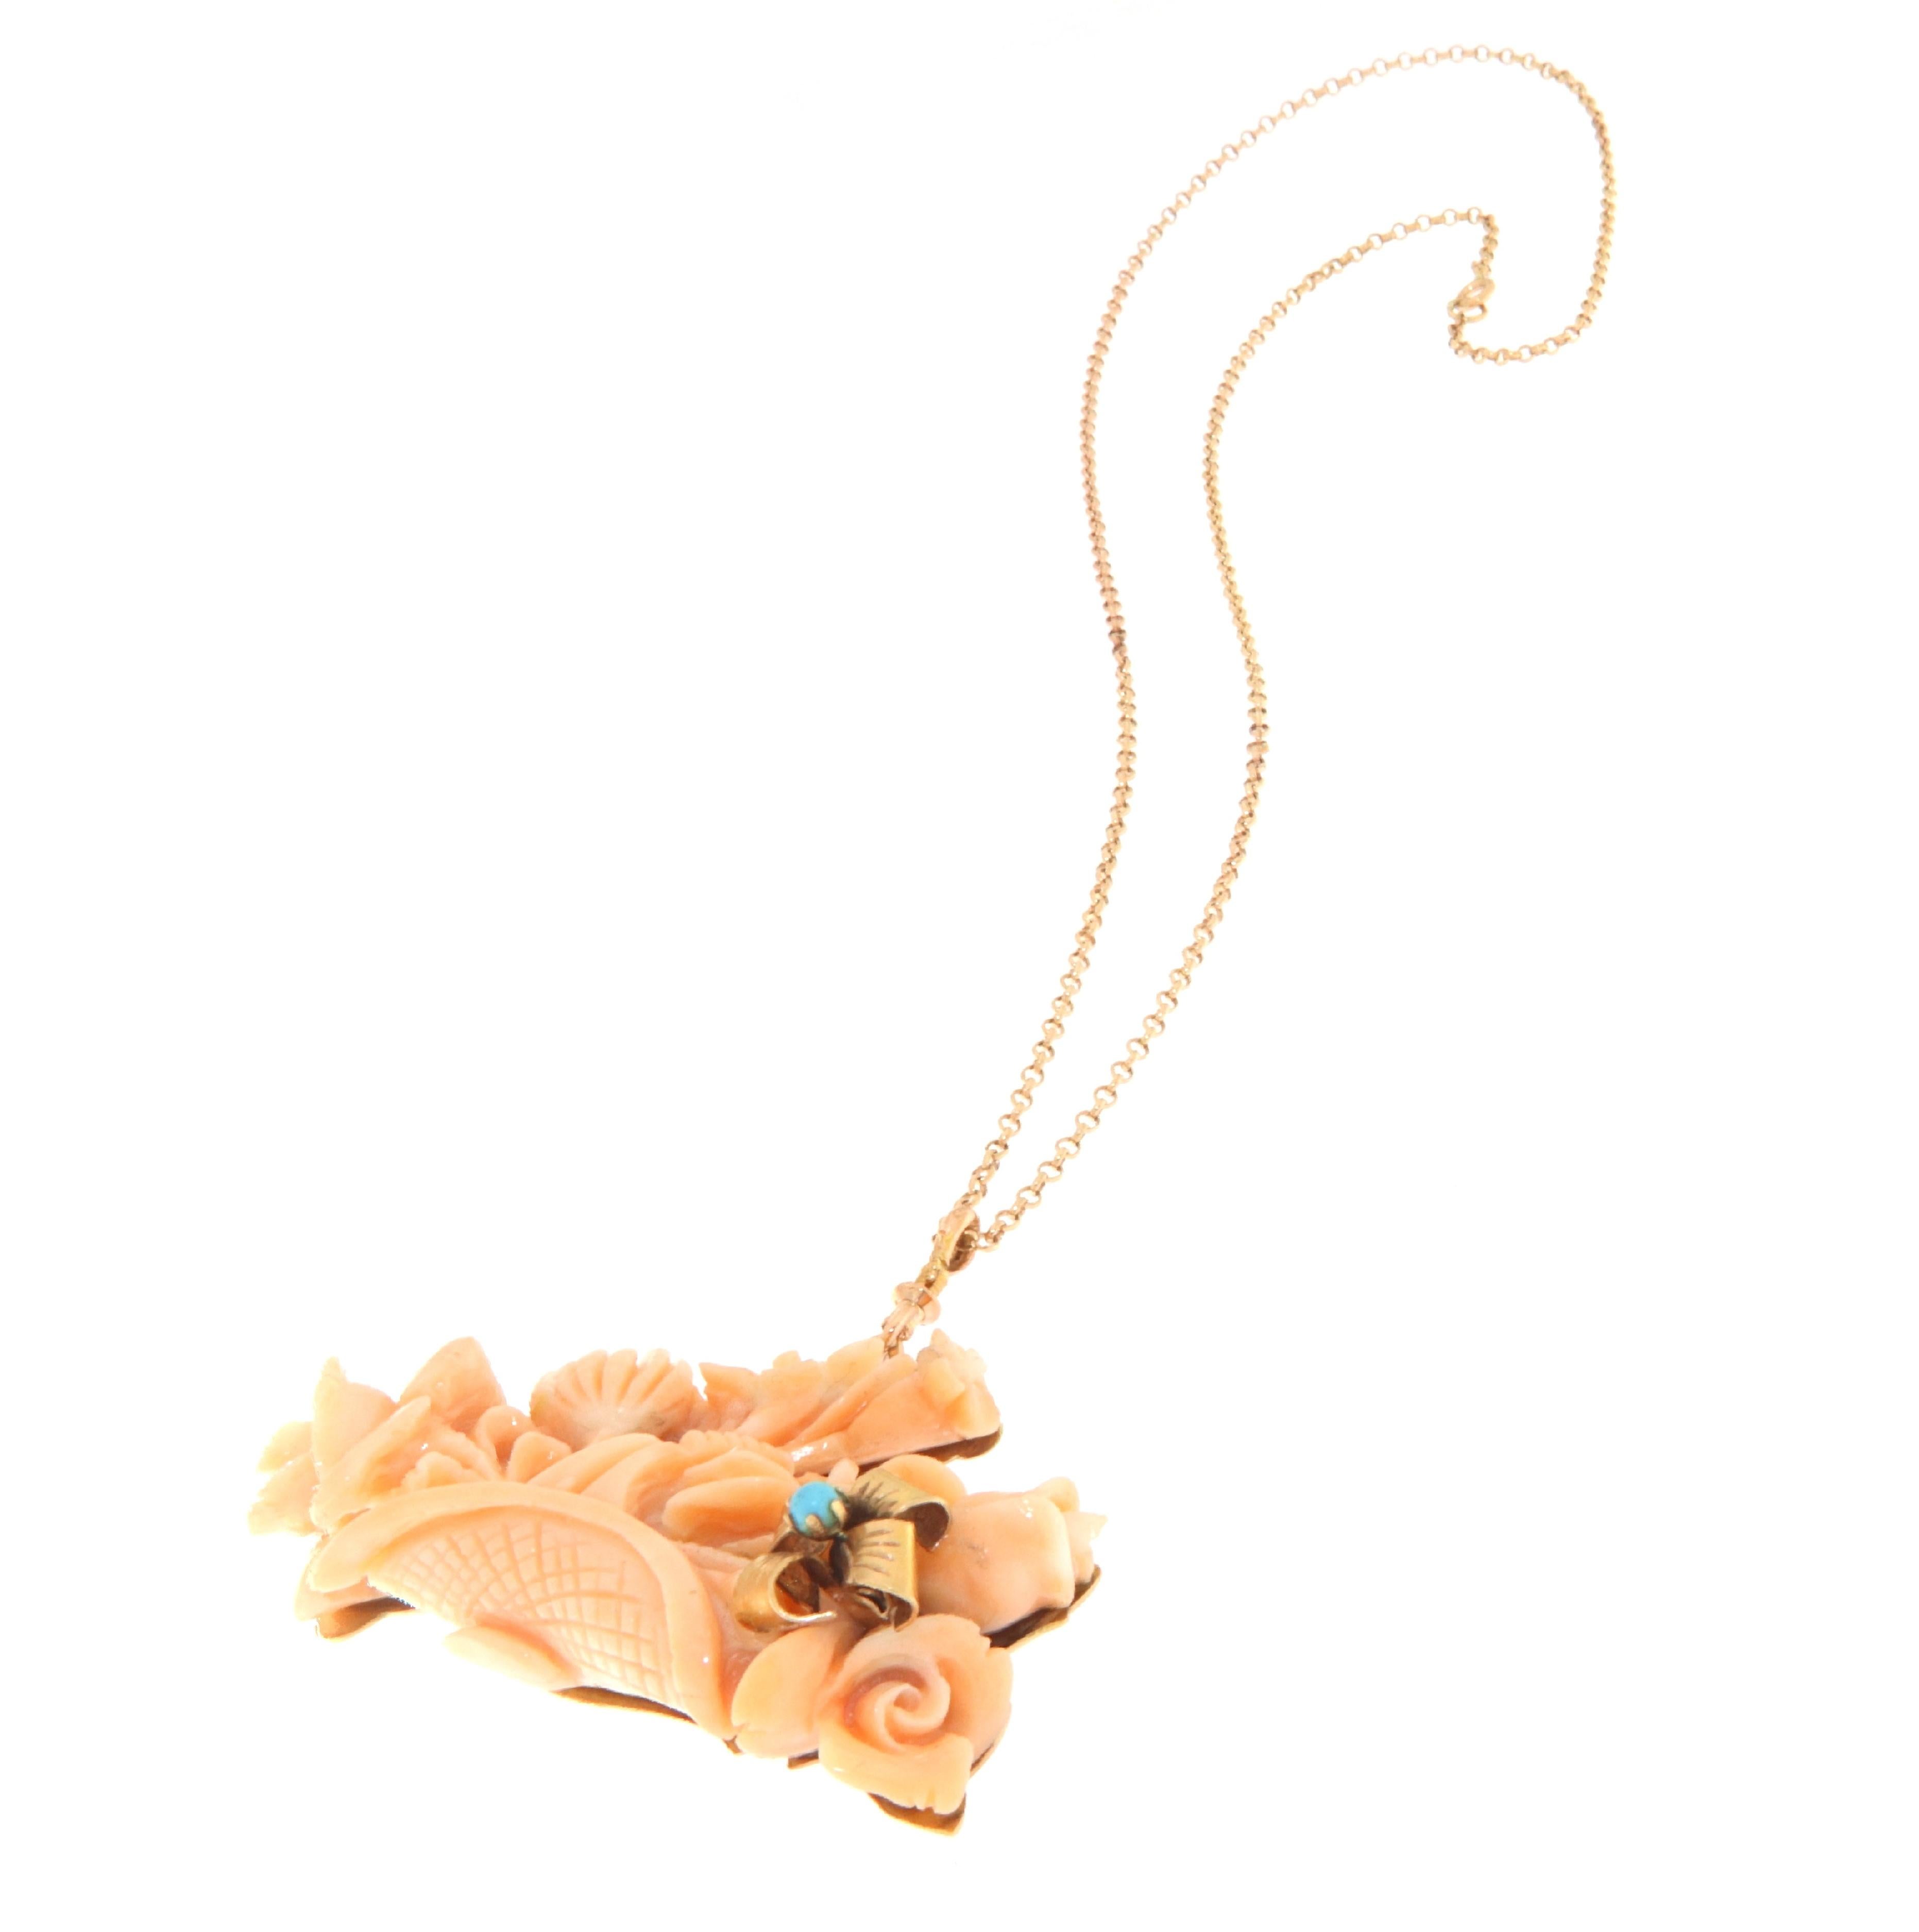 Diese exquisite Halskette aus 14-karätigem Gelbgold besteht aus einem zentralen Stück Koralle, das in ein zartes Bouquet aus Blumen und Blättern geschnitzt ist und die natürliche Schönheit und Tiefe der Koralle zur Geltung bringt. Ein kleiner